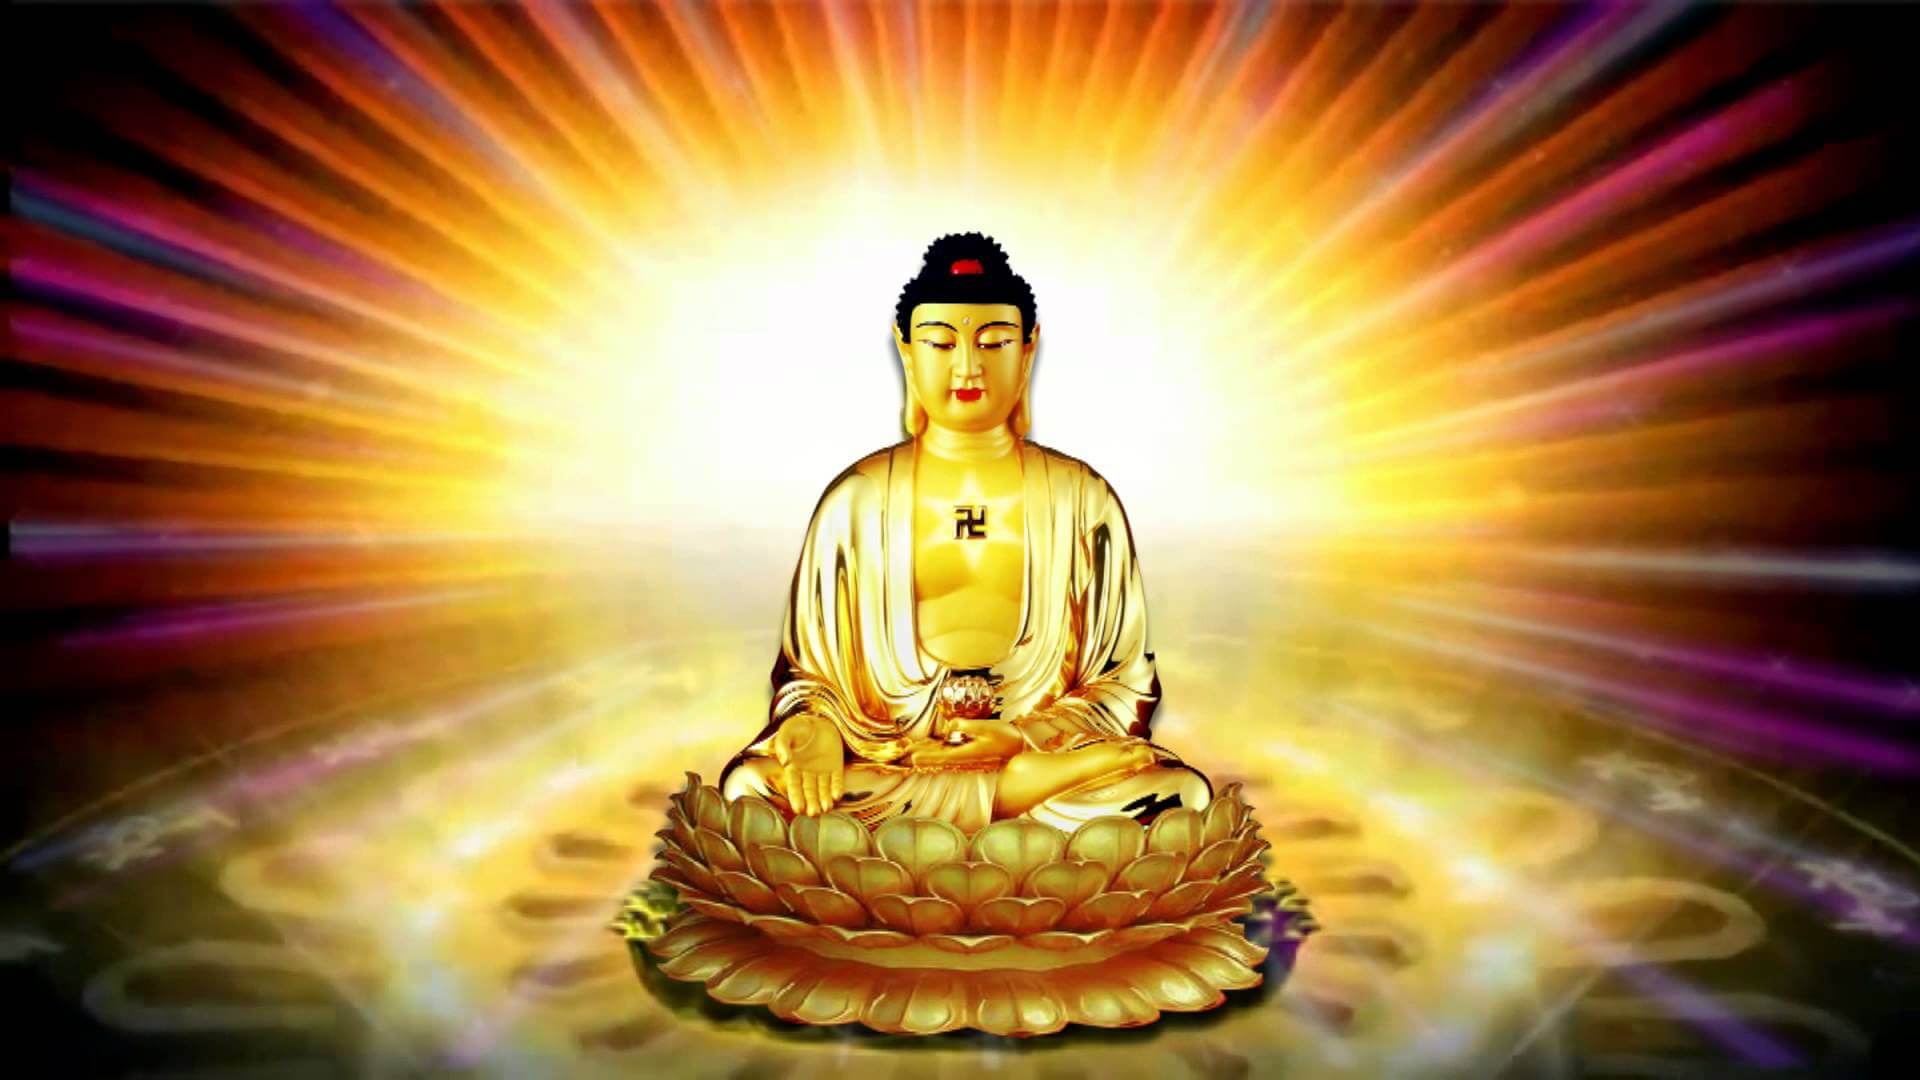 Tổng Hợp Những Hình Ảnh Về Đức Phật Đẹp Nhất Tổng Hợp Những Hình Ảnh Phật  Đẹp Nhất